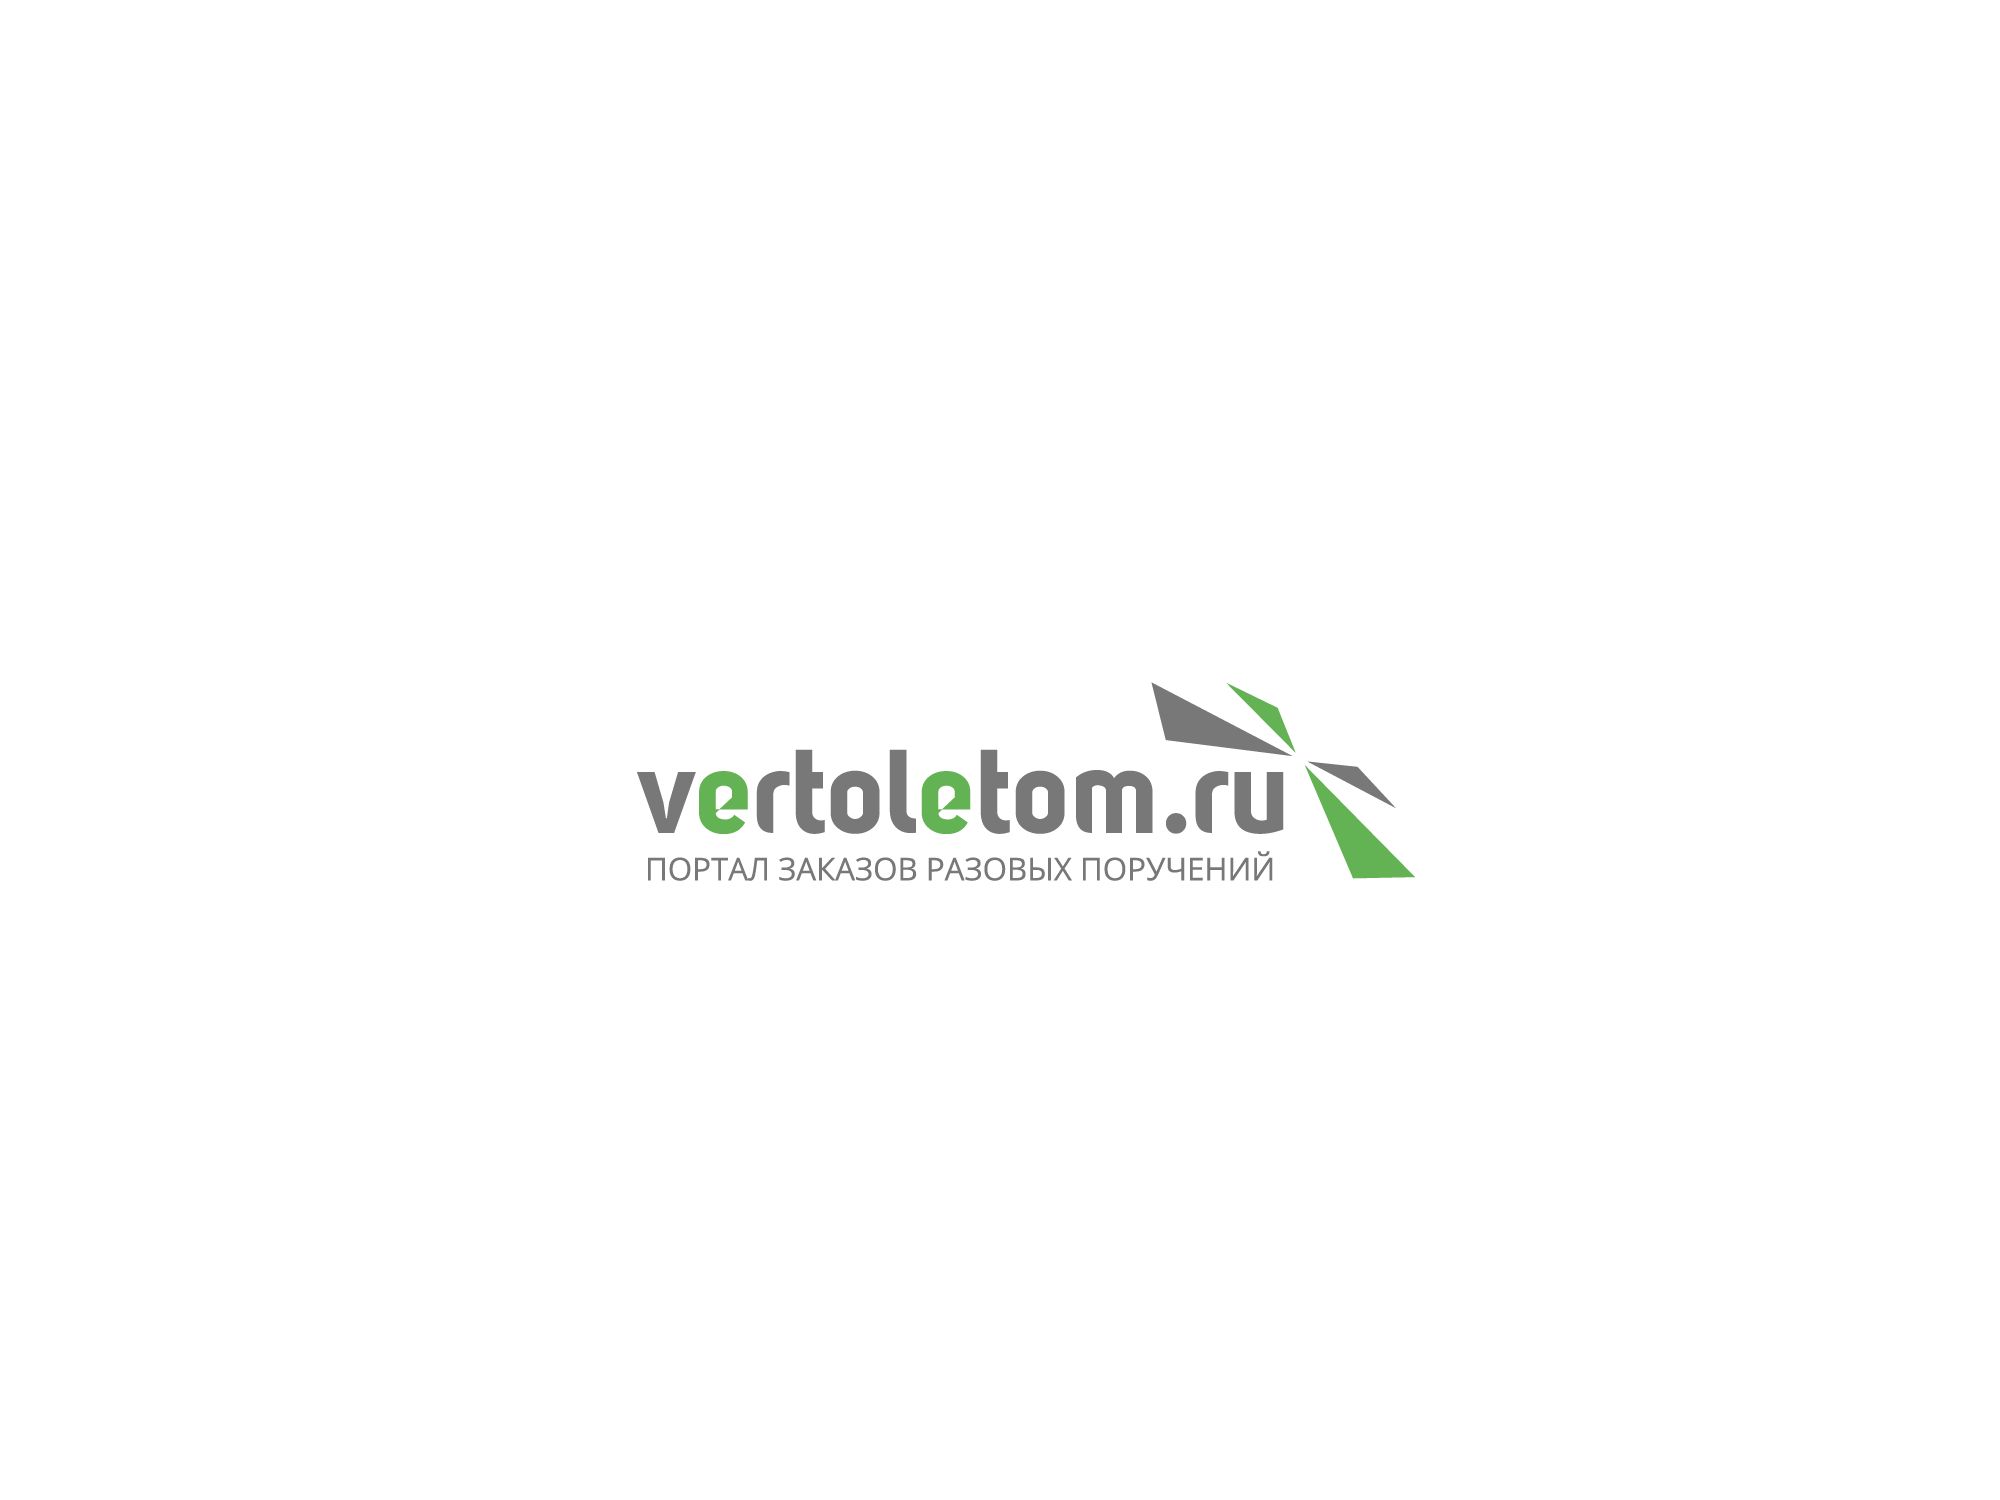 Логотип для vertoletom - дизайнер Alphir